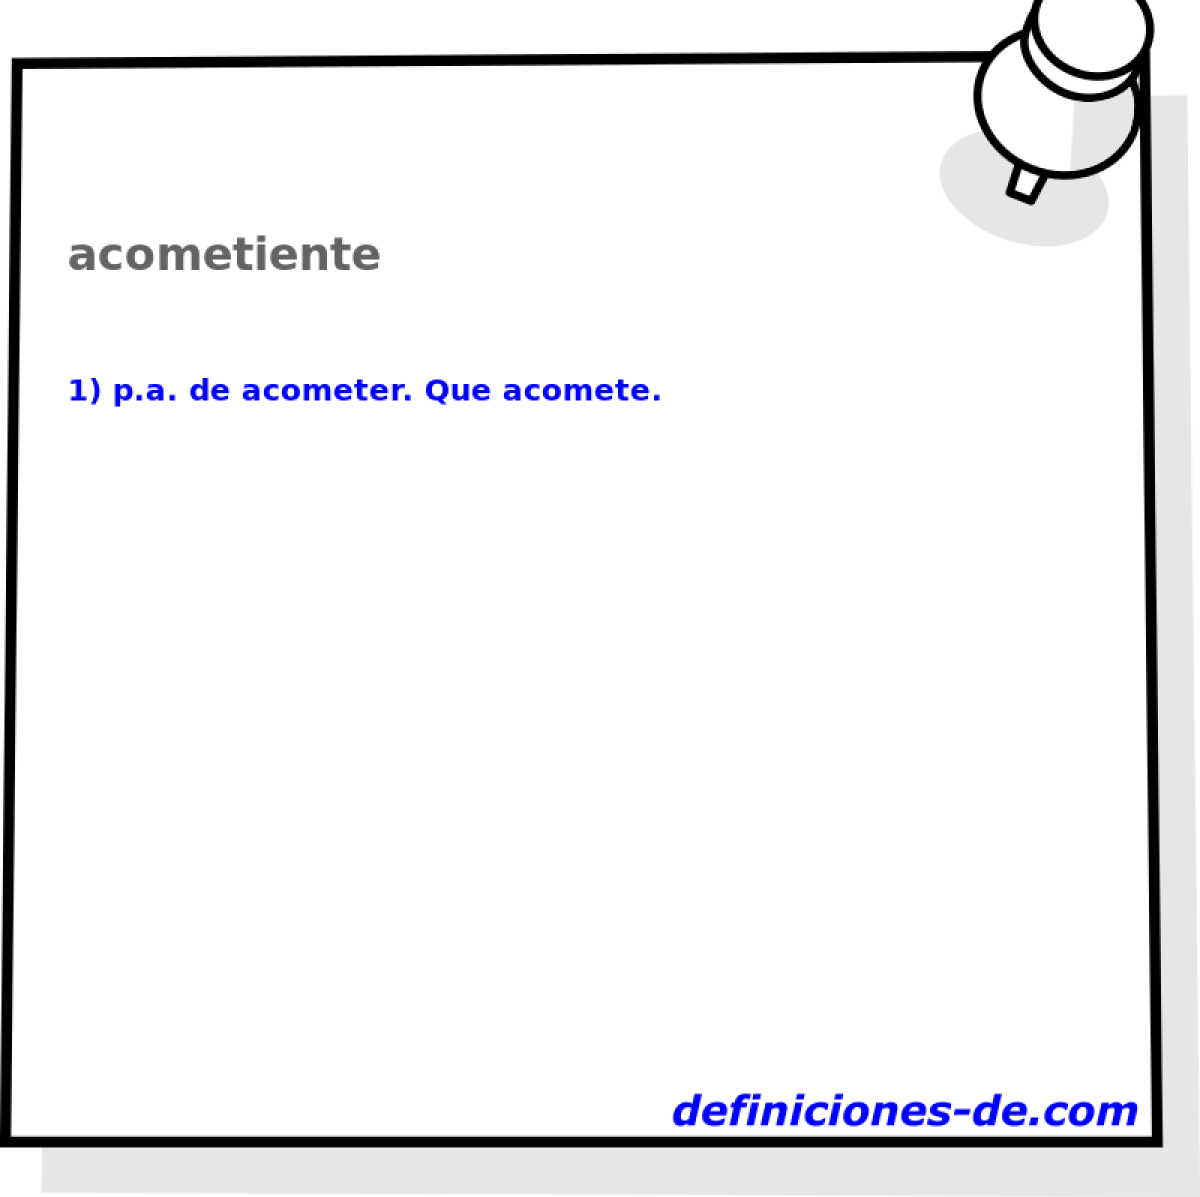 acometiente 